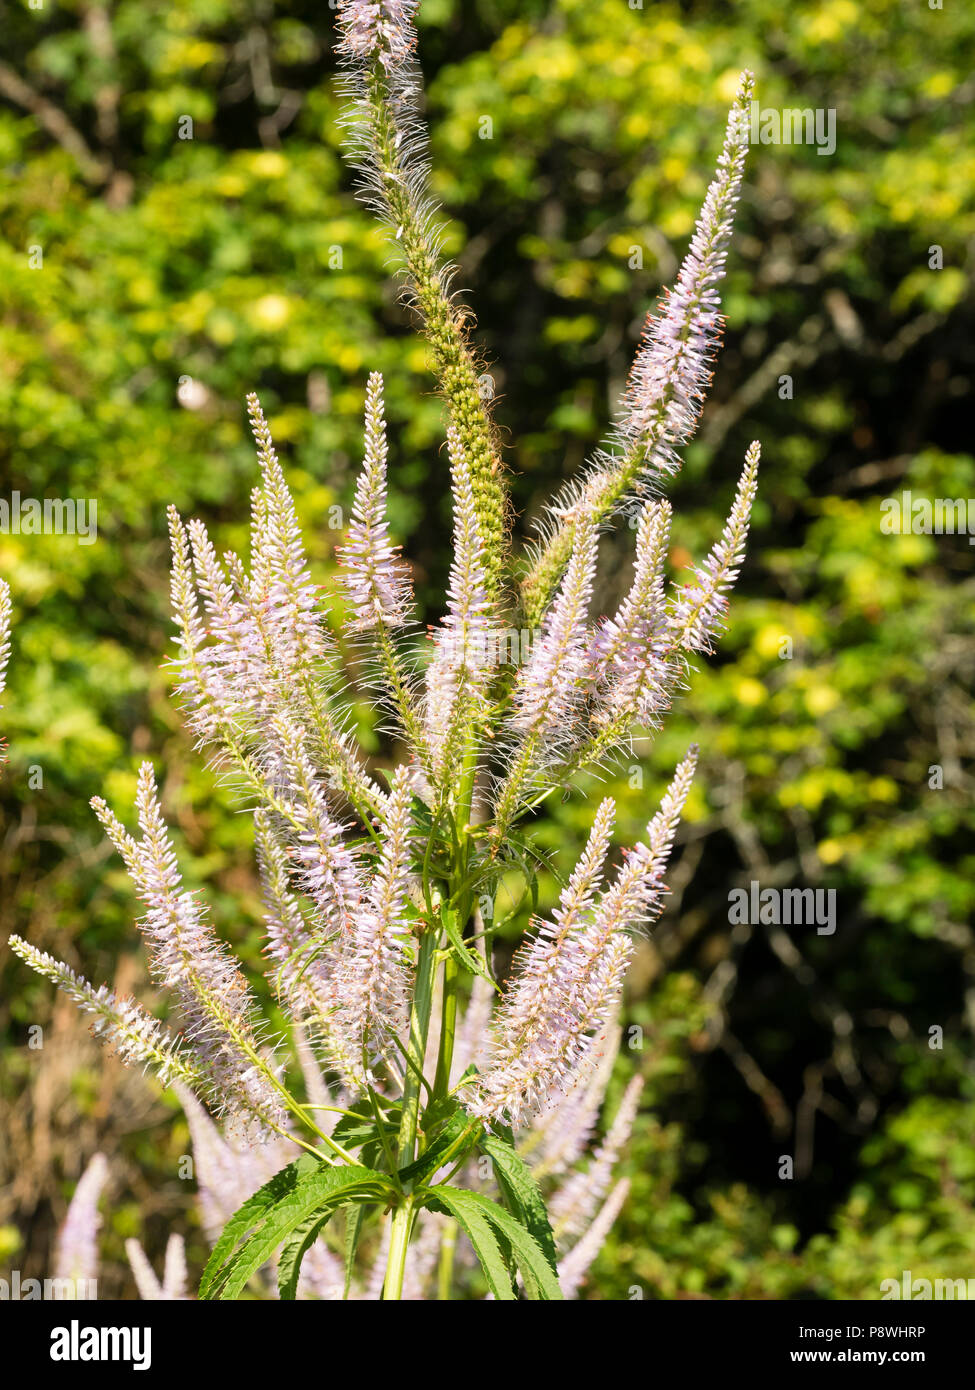 Blass Lavendel Blumen, die in der Verzweigung Spitzen der Hohen, Sommer blühende Staude, Veronicastrum virginicum 'Lavendelturm' Stockfoto